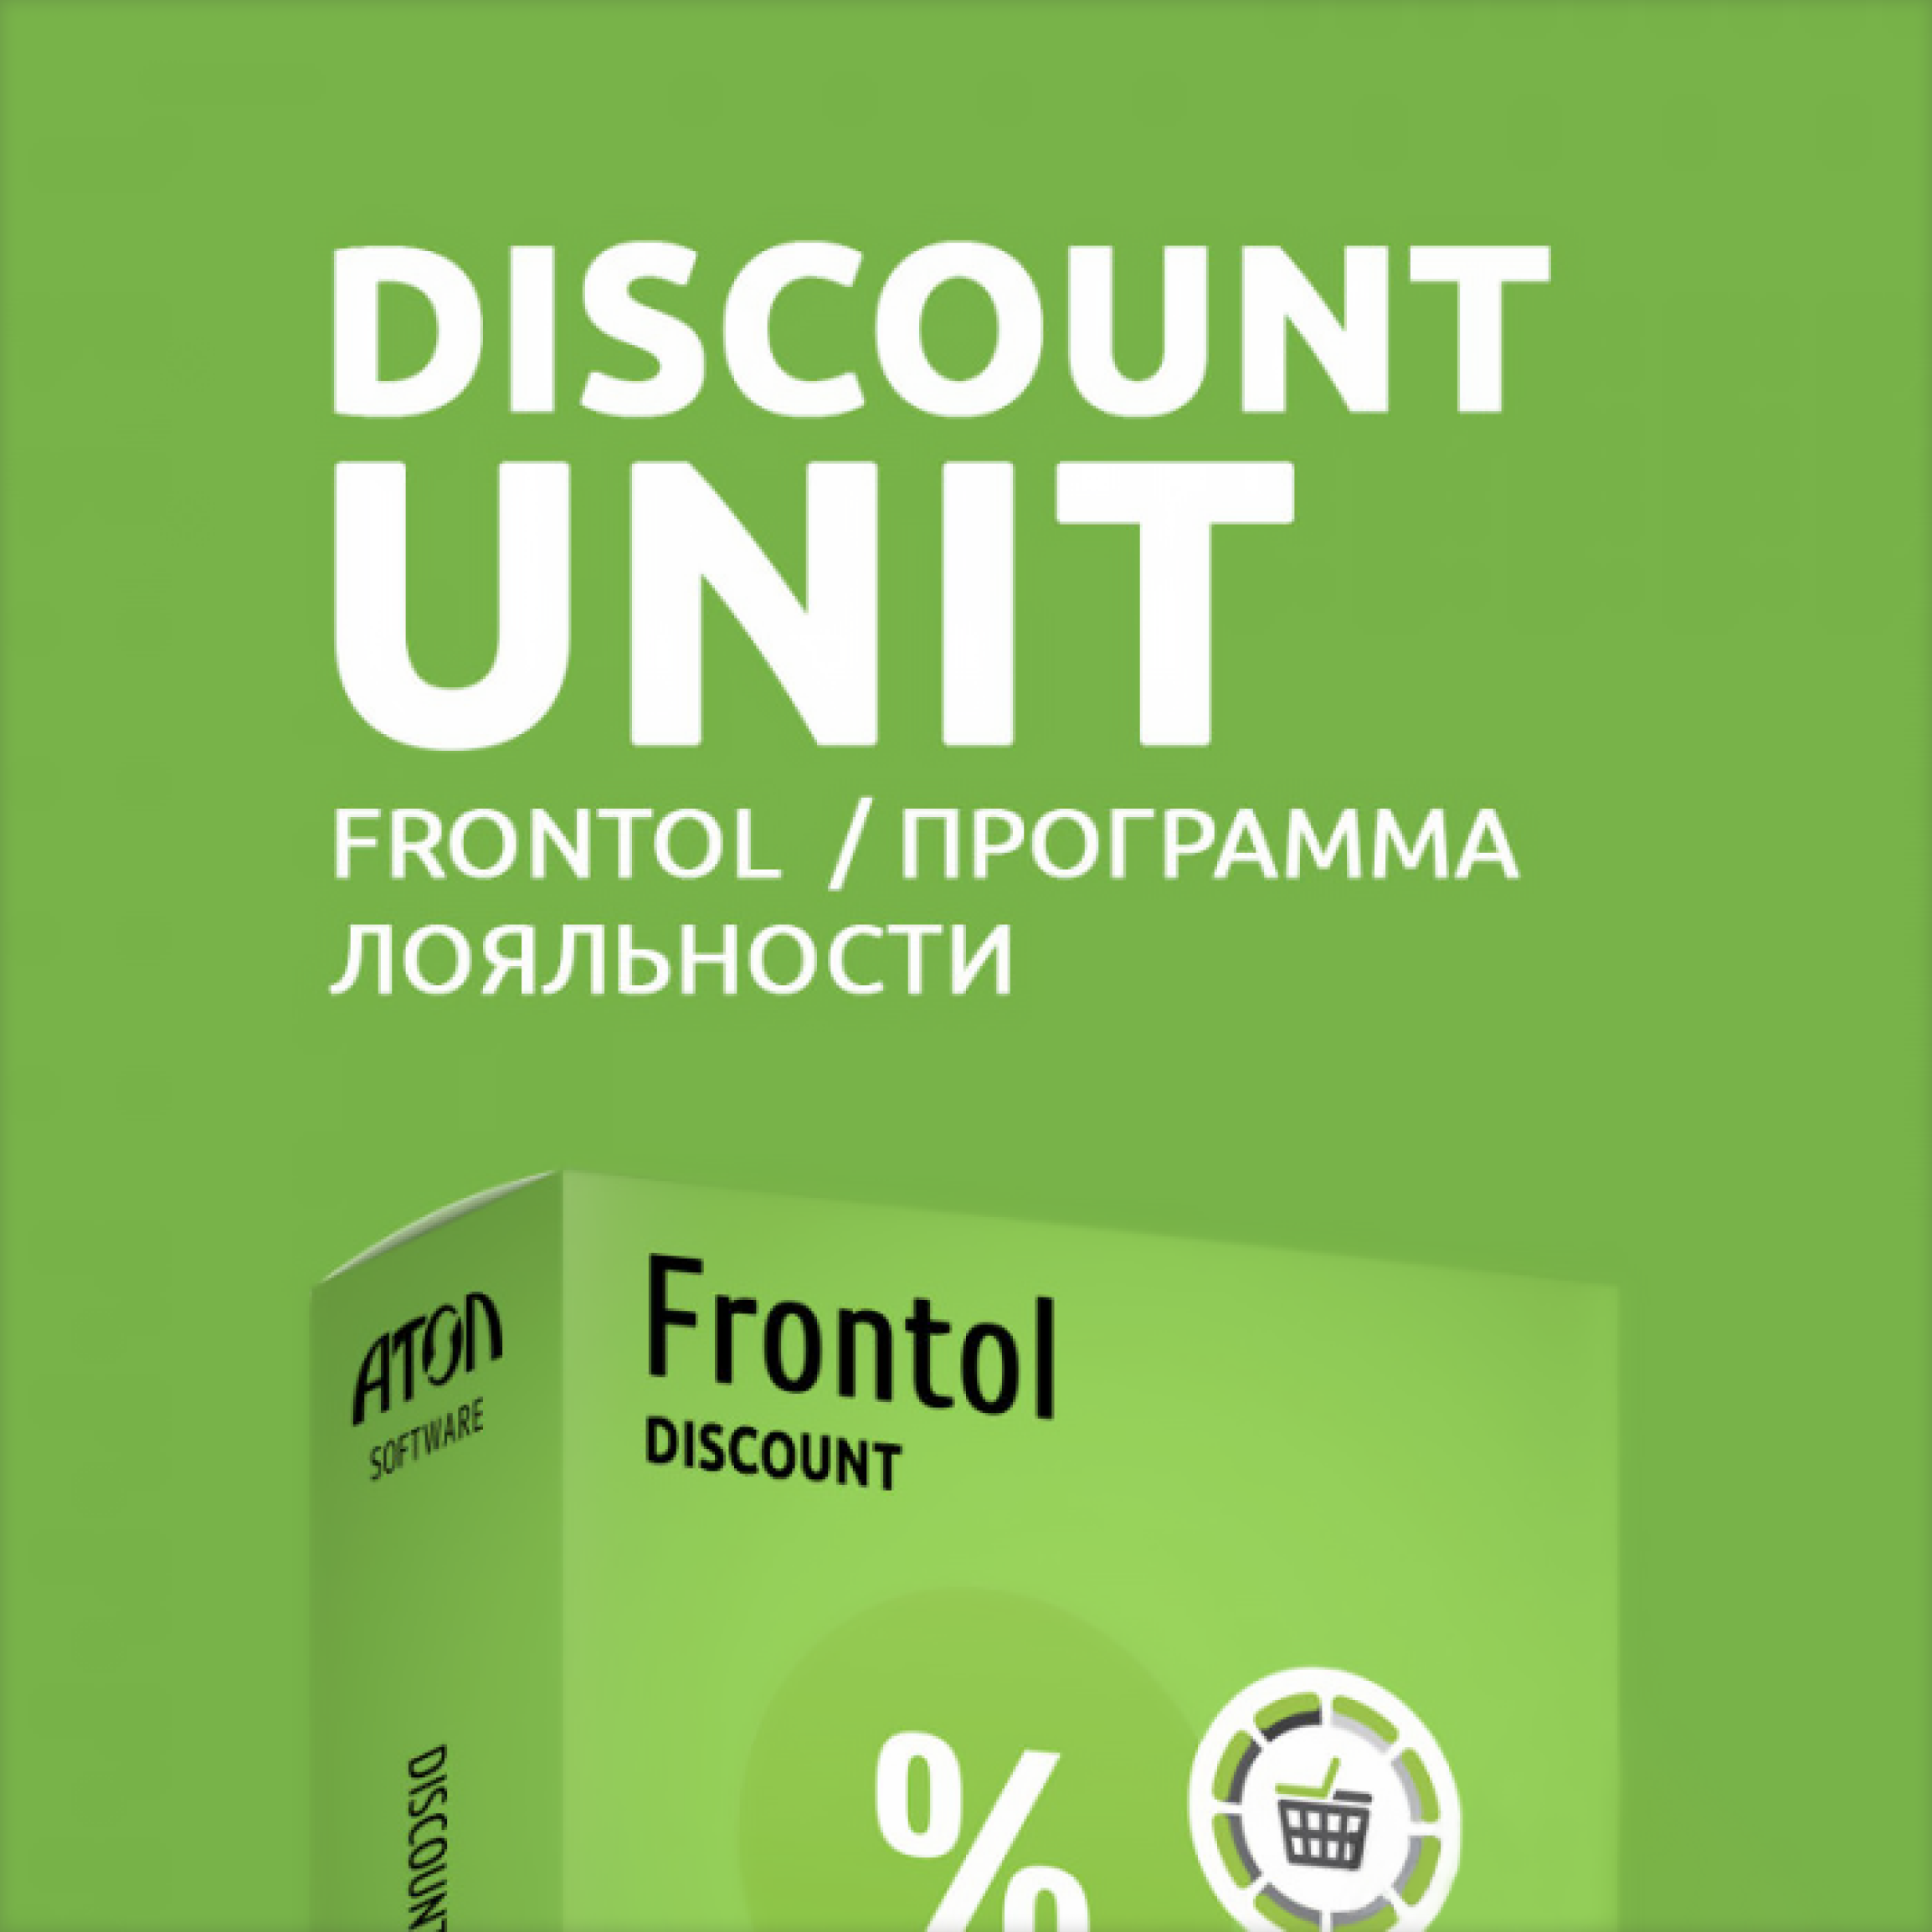 Фронтол юнит. Атол Frontol discount Unit (1 год). Frontol discount Unit. Фронтол дисконт Юнит. По Frontol ALCO Unit.